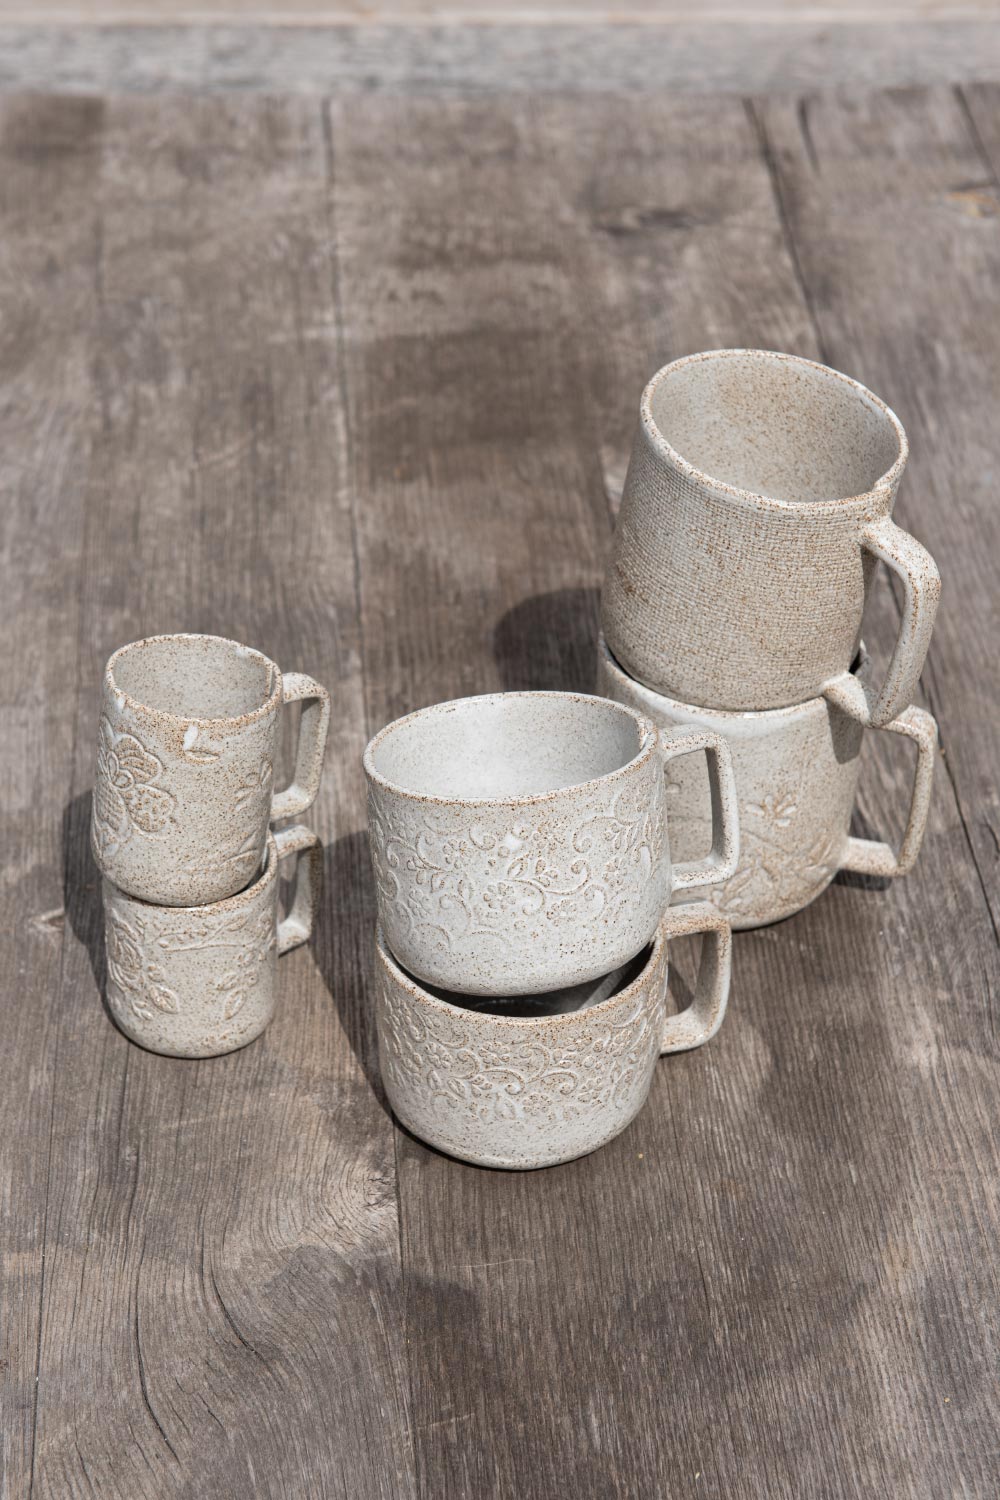 Handgeformte Tassen in drei Größen, Giovelab